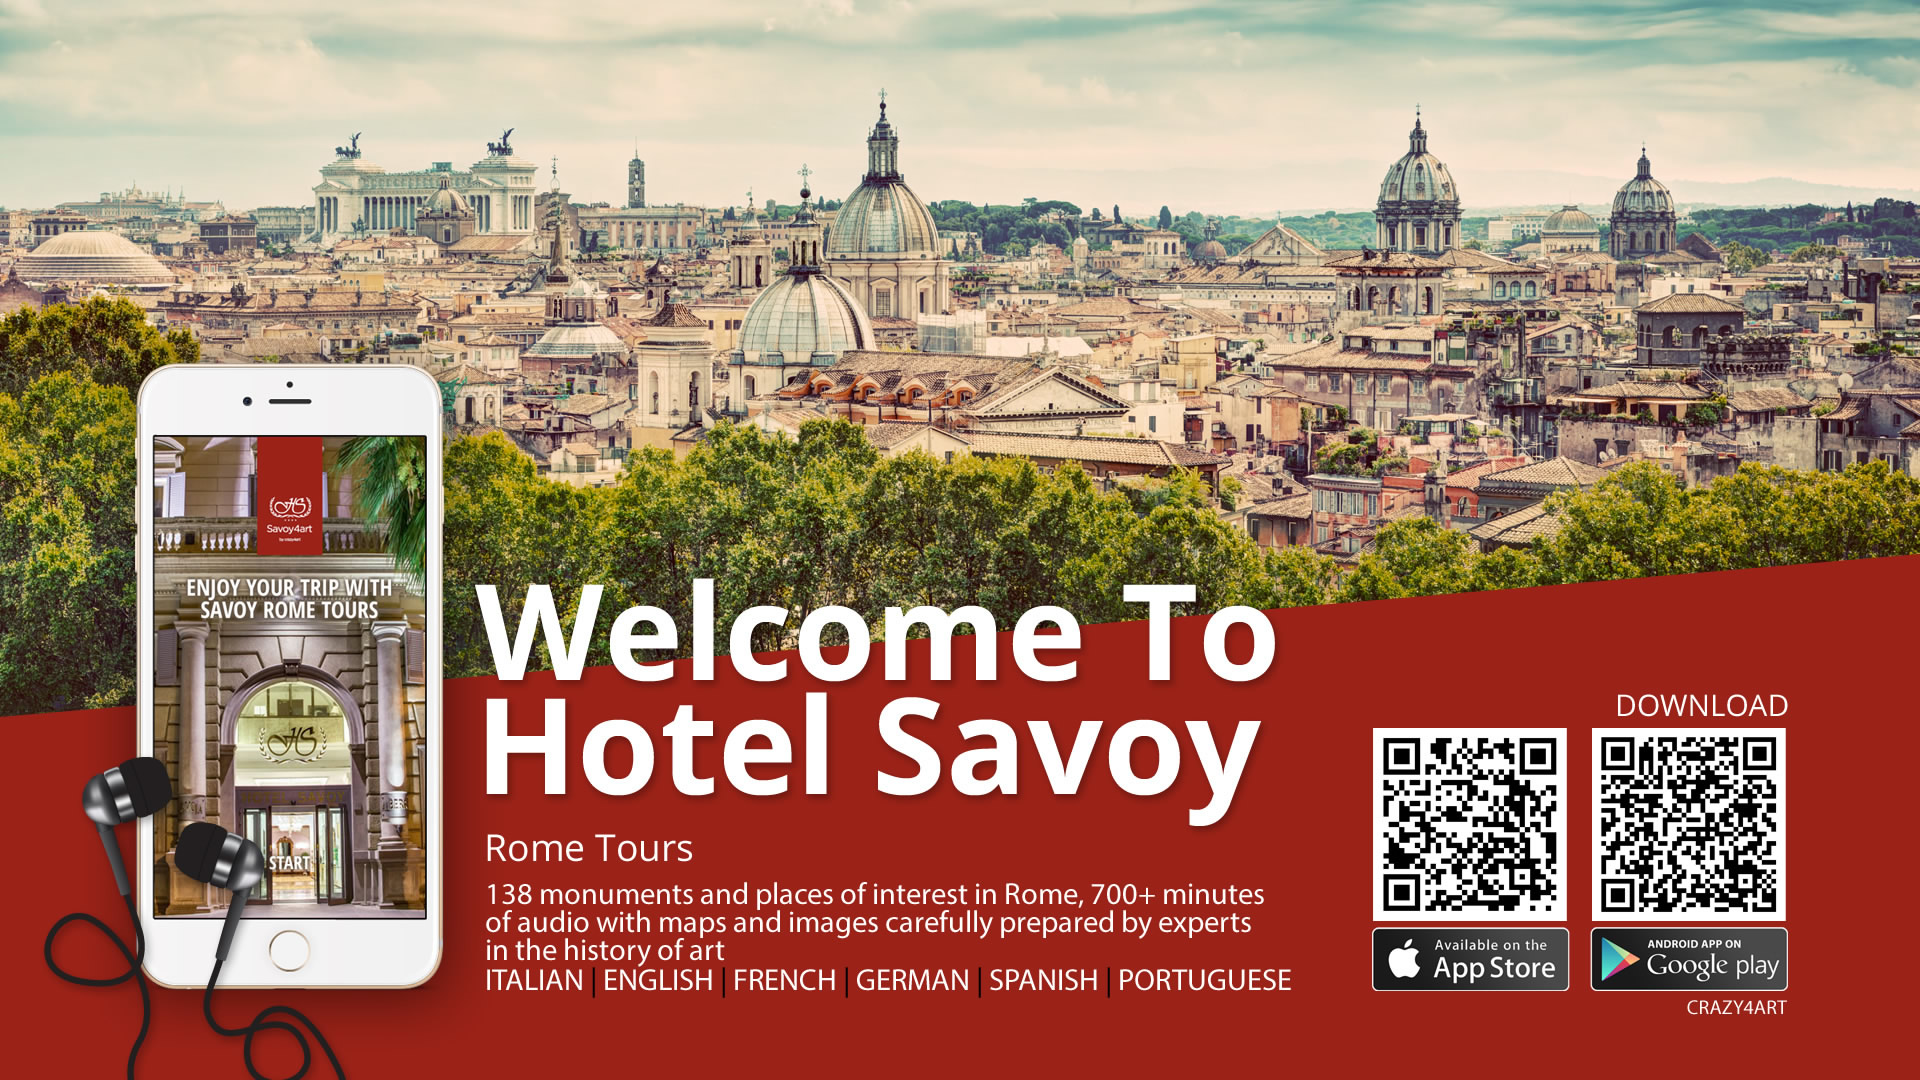 Crazy4Art Hotel Savoy Roma App audioguida - Patrizio Rossi - realizzazione immagini play store - apple app store web graphic designer